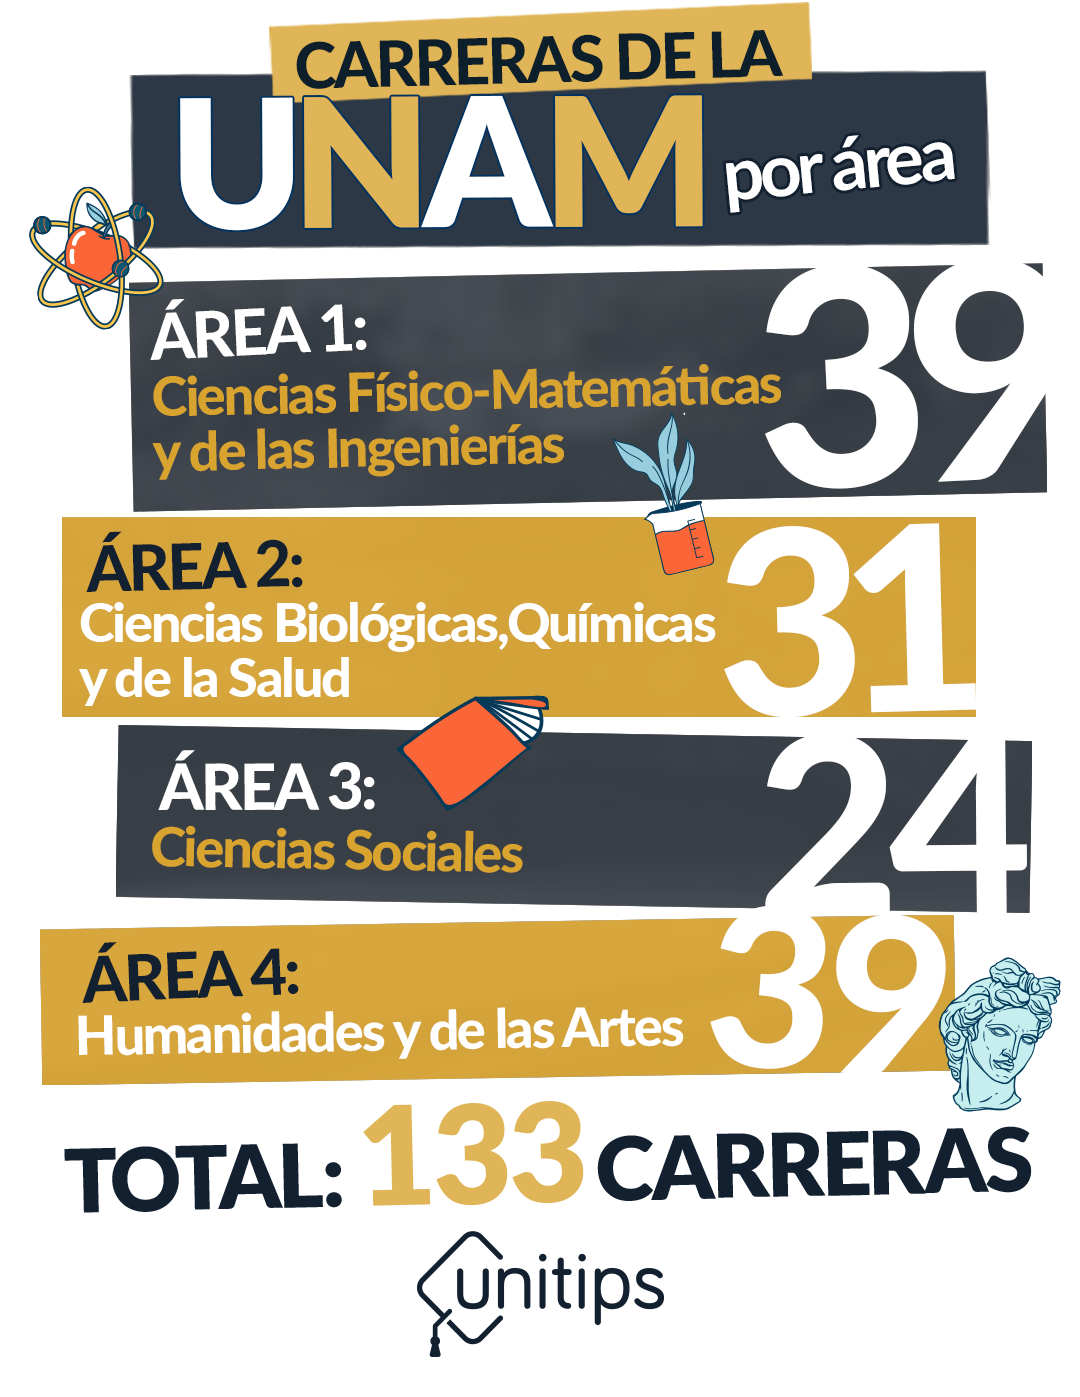 I-INTERNA_CARRERAS-DE-LA-UNAM-POR-AREA